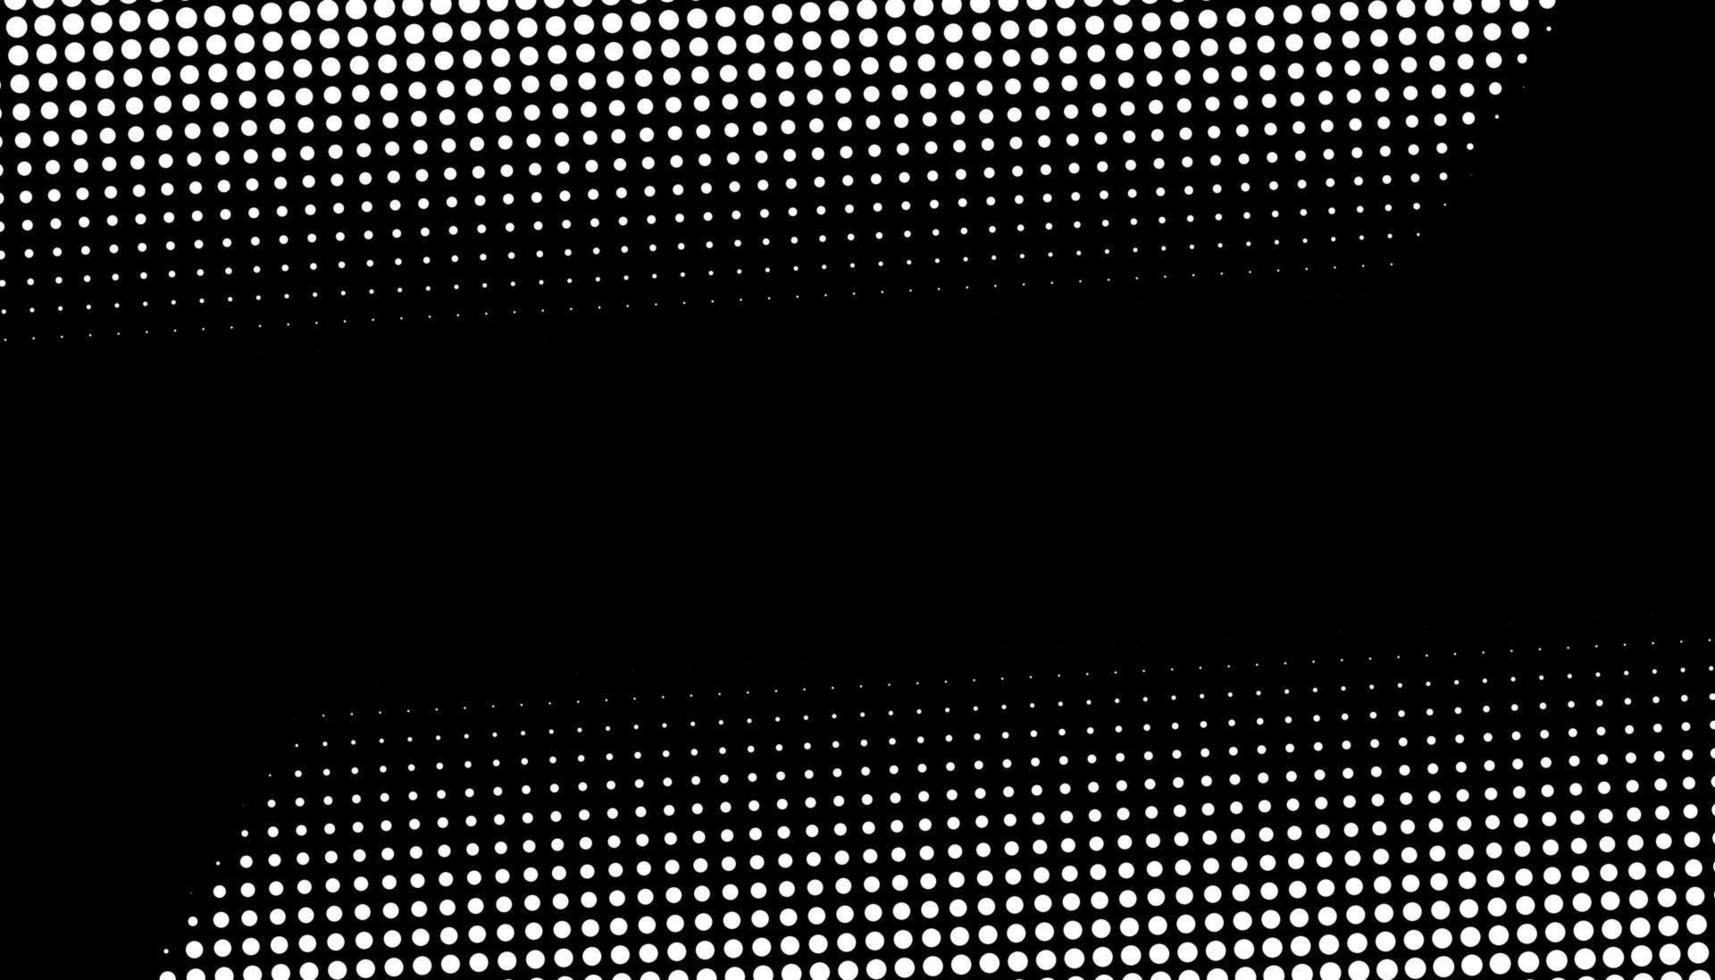 retro halvtonsgradient från prickar. monokrom vit och svart halvtonsbakgrund med cirklar. vektor illustration.